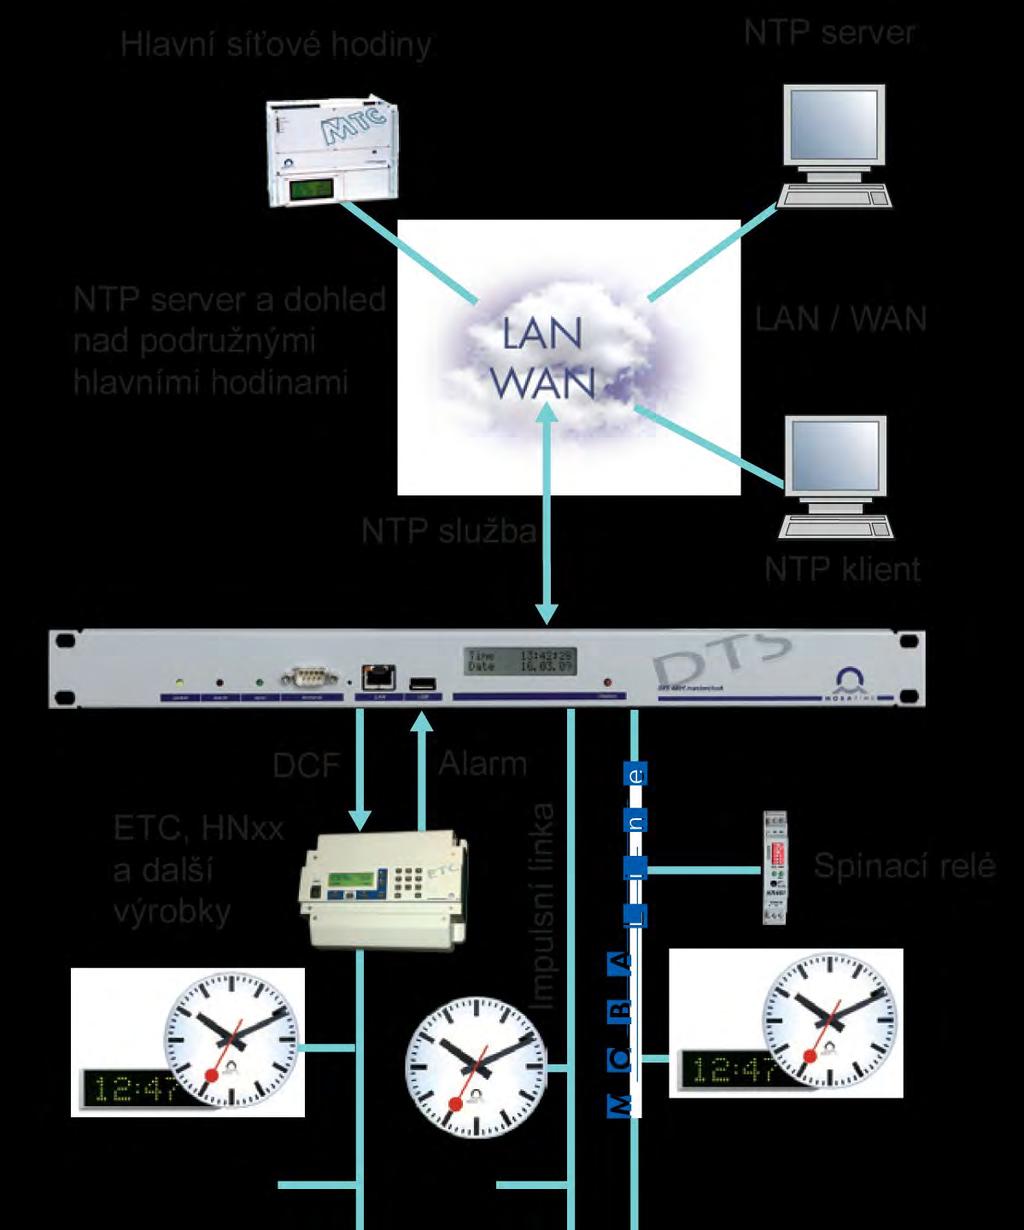 kanálová relé, programování spínání přes LAN, přenos řídící informace DTS 4802 masterclock jako hlavní hodiny s impulsní a / nebo MOBALine linkou pro synchronizaci a sledování standardních hlavních